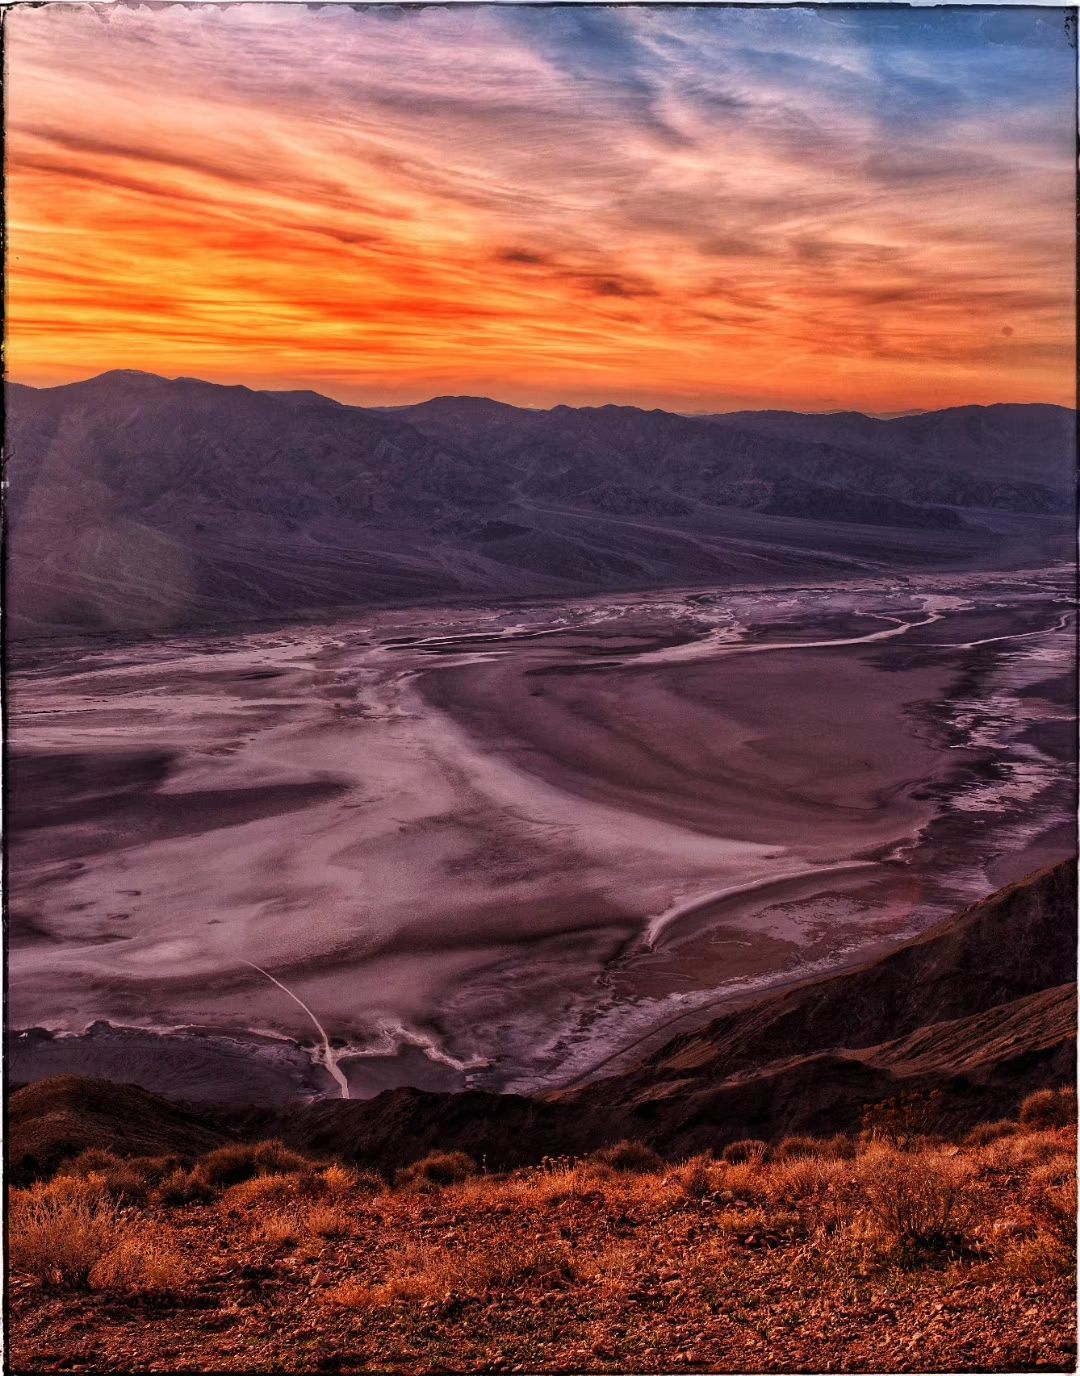 Dante's view 是死亡谷国家公园首推的颜值担当，公园建议来此观日落，观景平台建在1500米